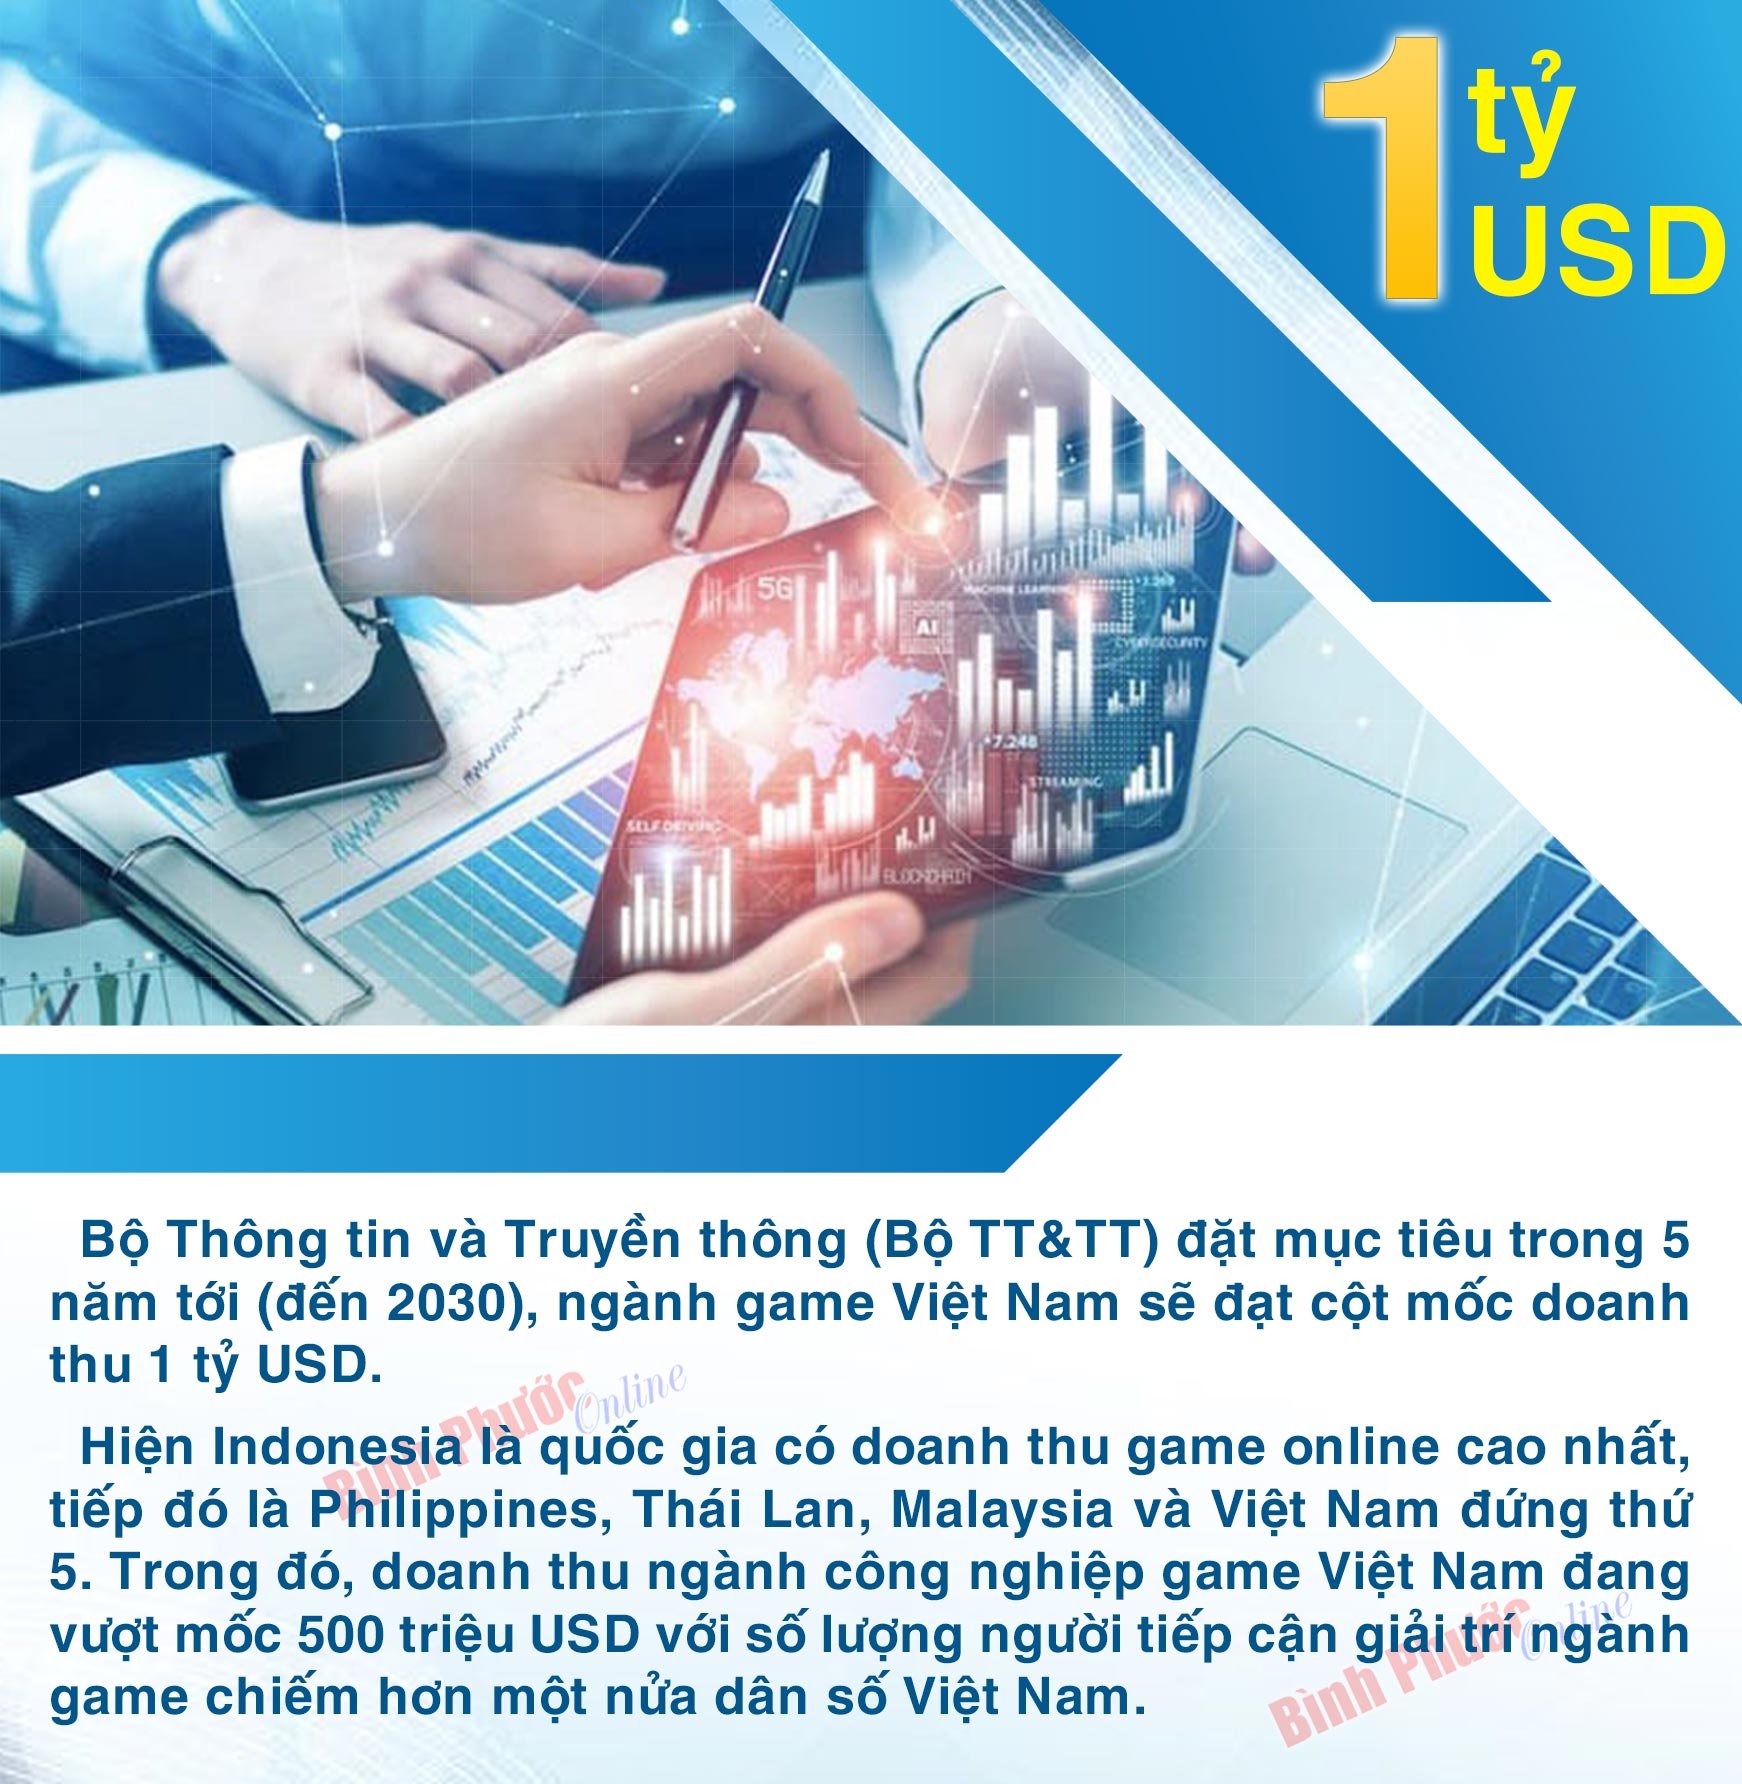 Ngành game Việt Nam đặt mục tiêu doanh thu 1 tỷ USD vào năm 2030